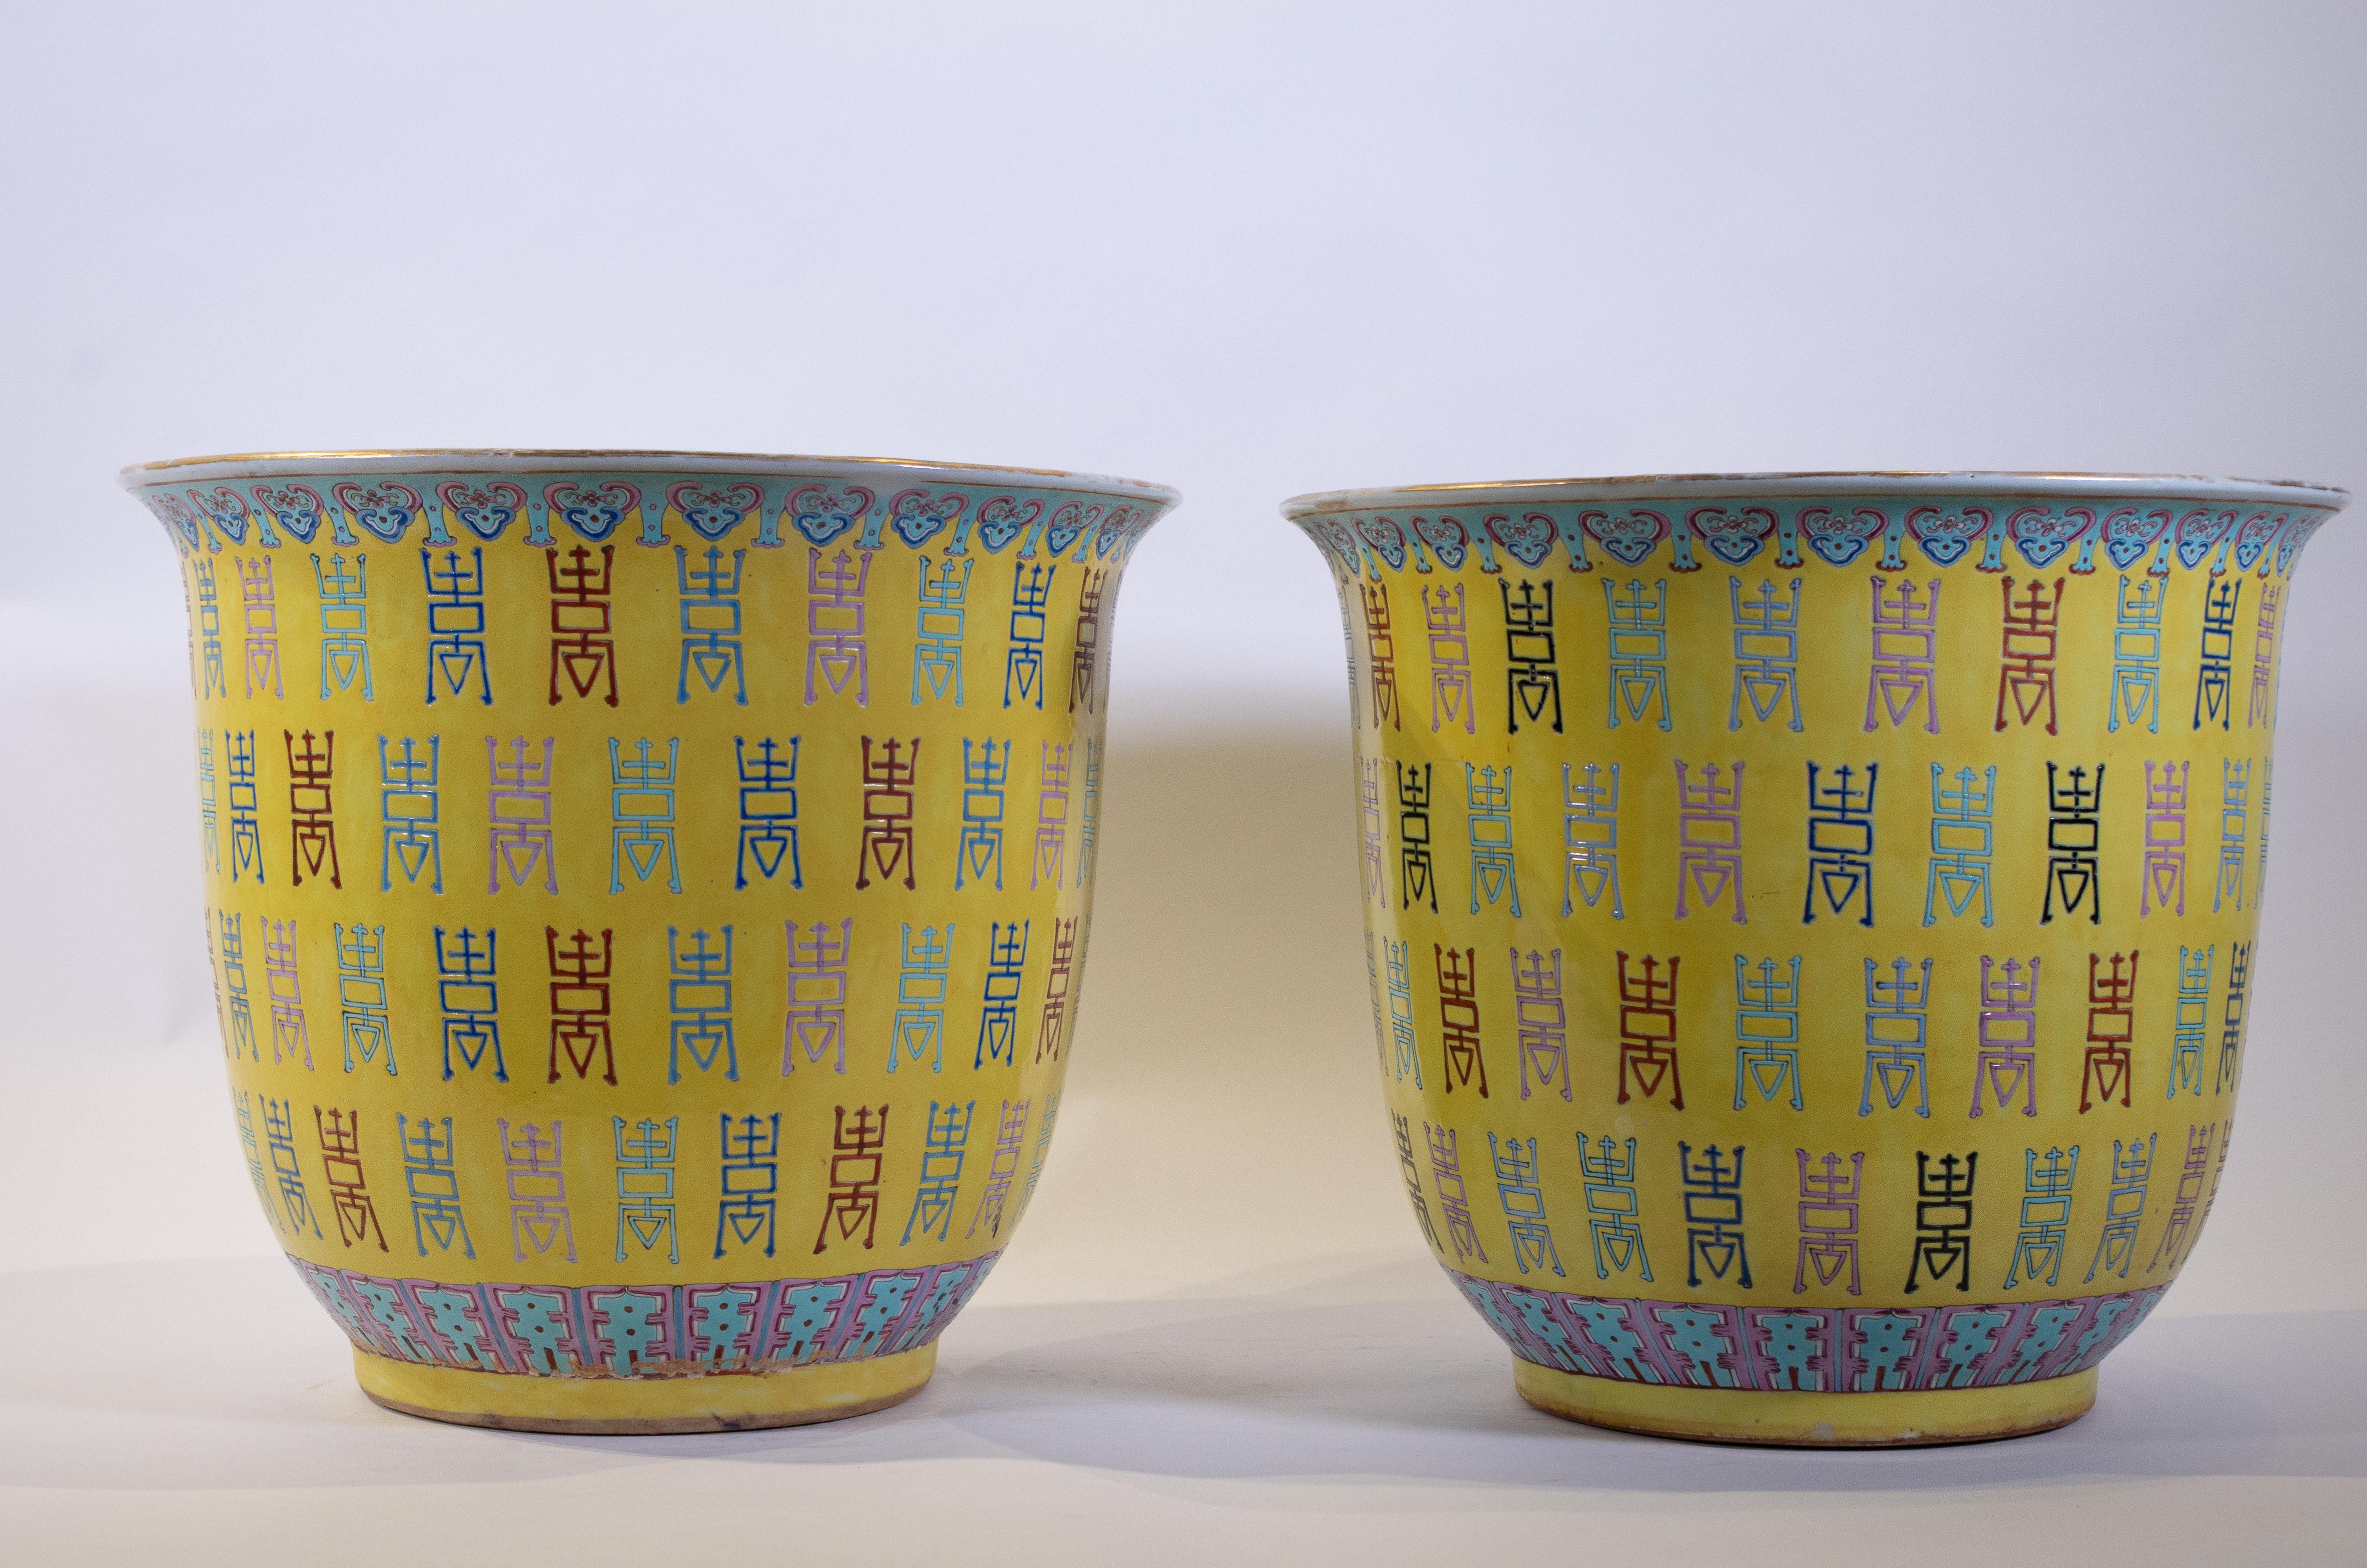 Une fabuleuse, grande et décorative paire de jardinières/vases en polychrome d'exportation chinoise Famille rose à fond jaune impérial. Chacune est magnifiquement peinte dans des émaux de fond jaune impérial et peinte à la main avec des caractères